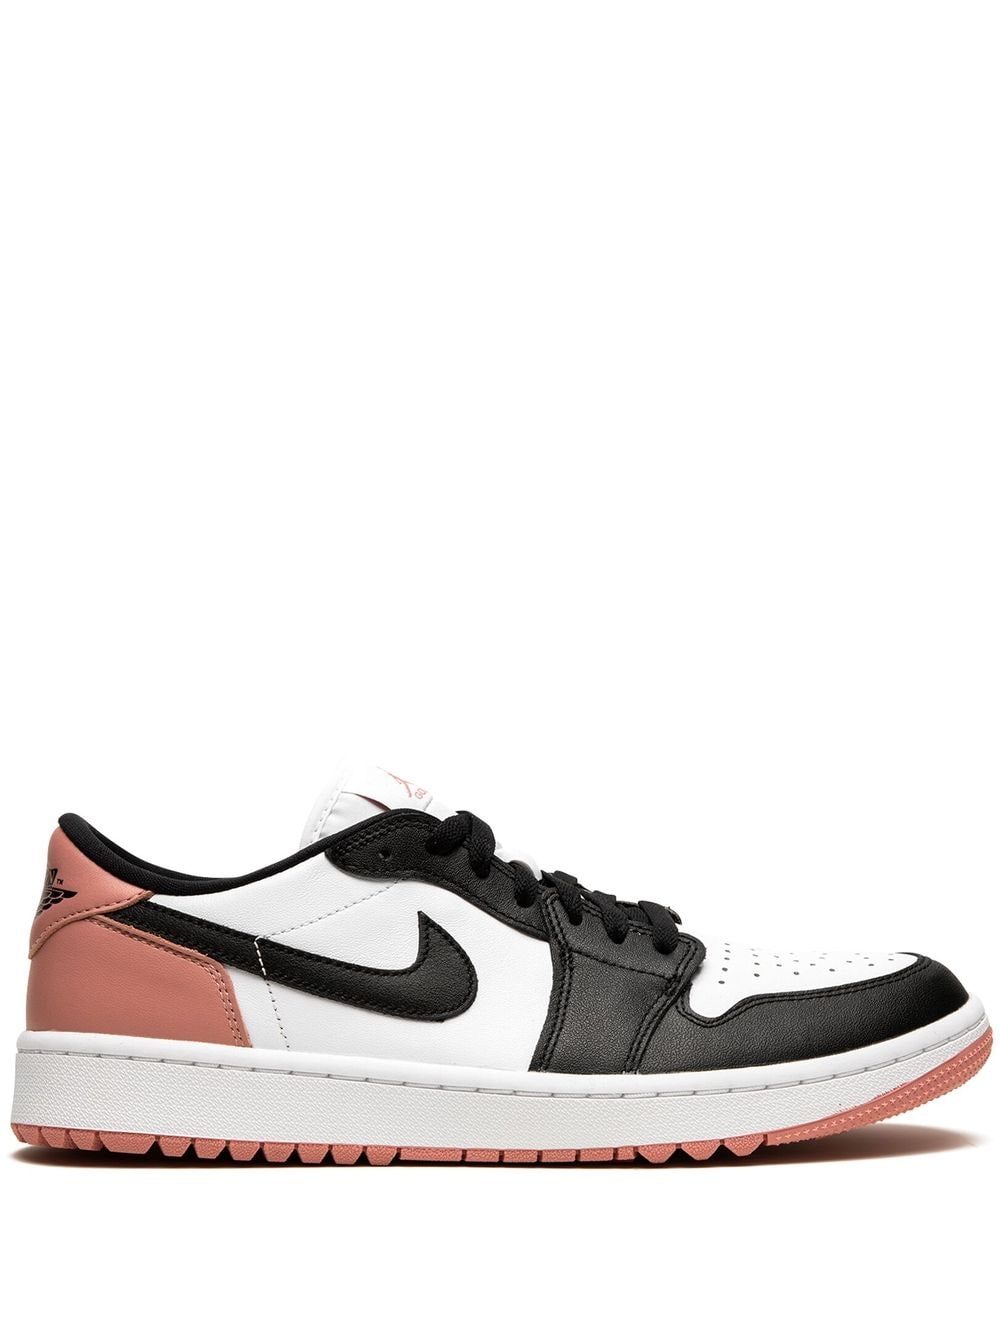 Jordan Air Jordan Low G "Rust Pink" sneakers - Black